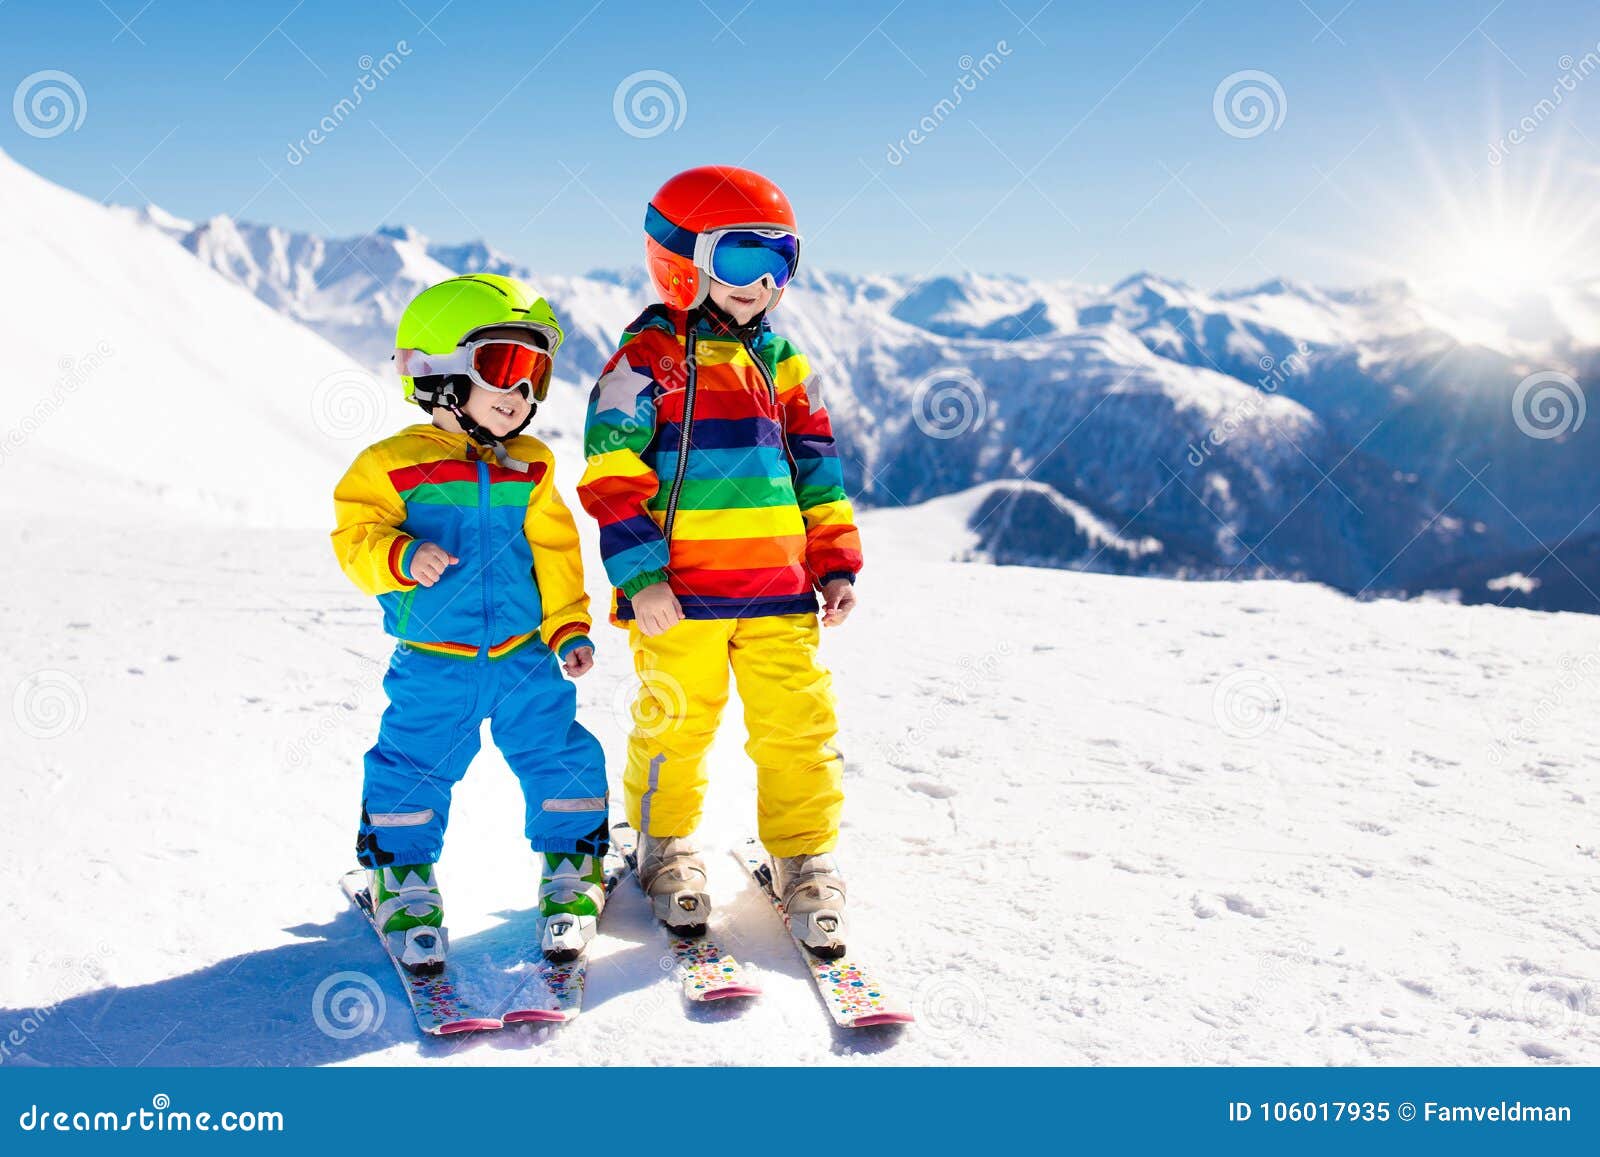 ontbijt zakdoek Darts Ski En Sneeuw De Winterpret Voor Jonge Geitjes Kinderen Het Ski?en Stock  Afbeelding - Image of alpien, actief: 106017935